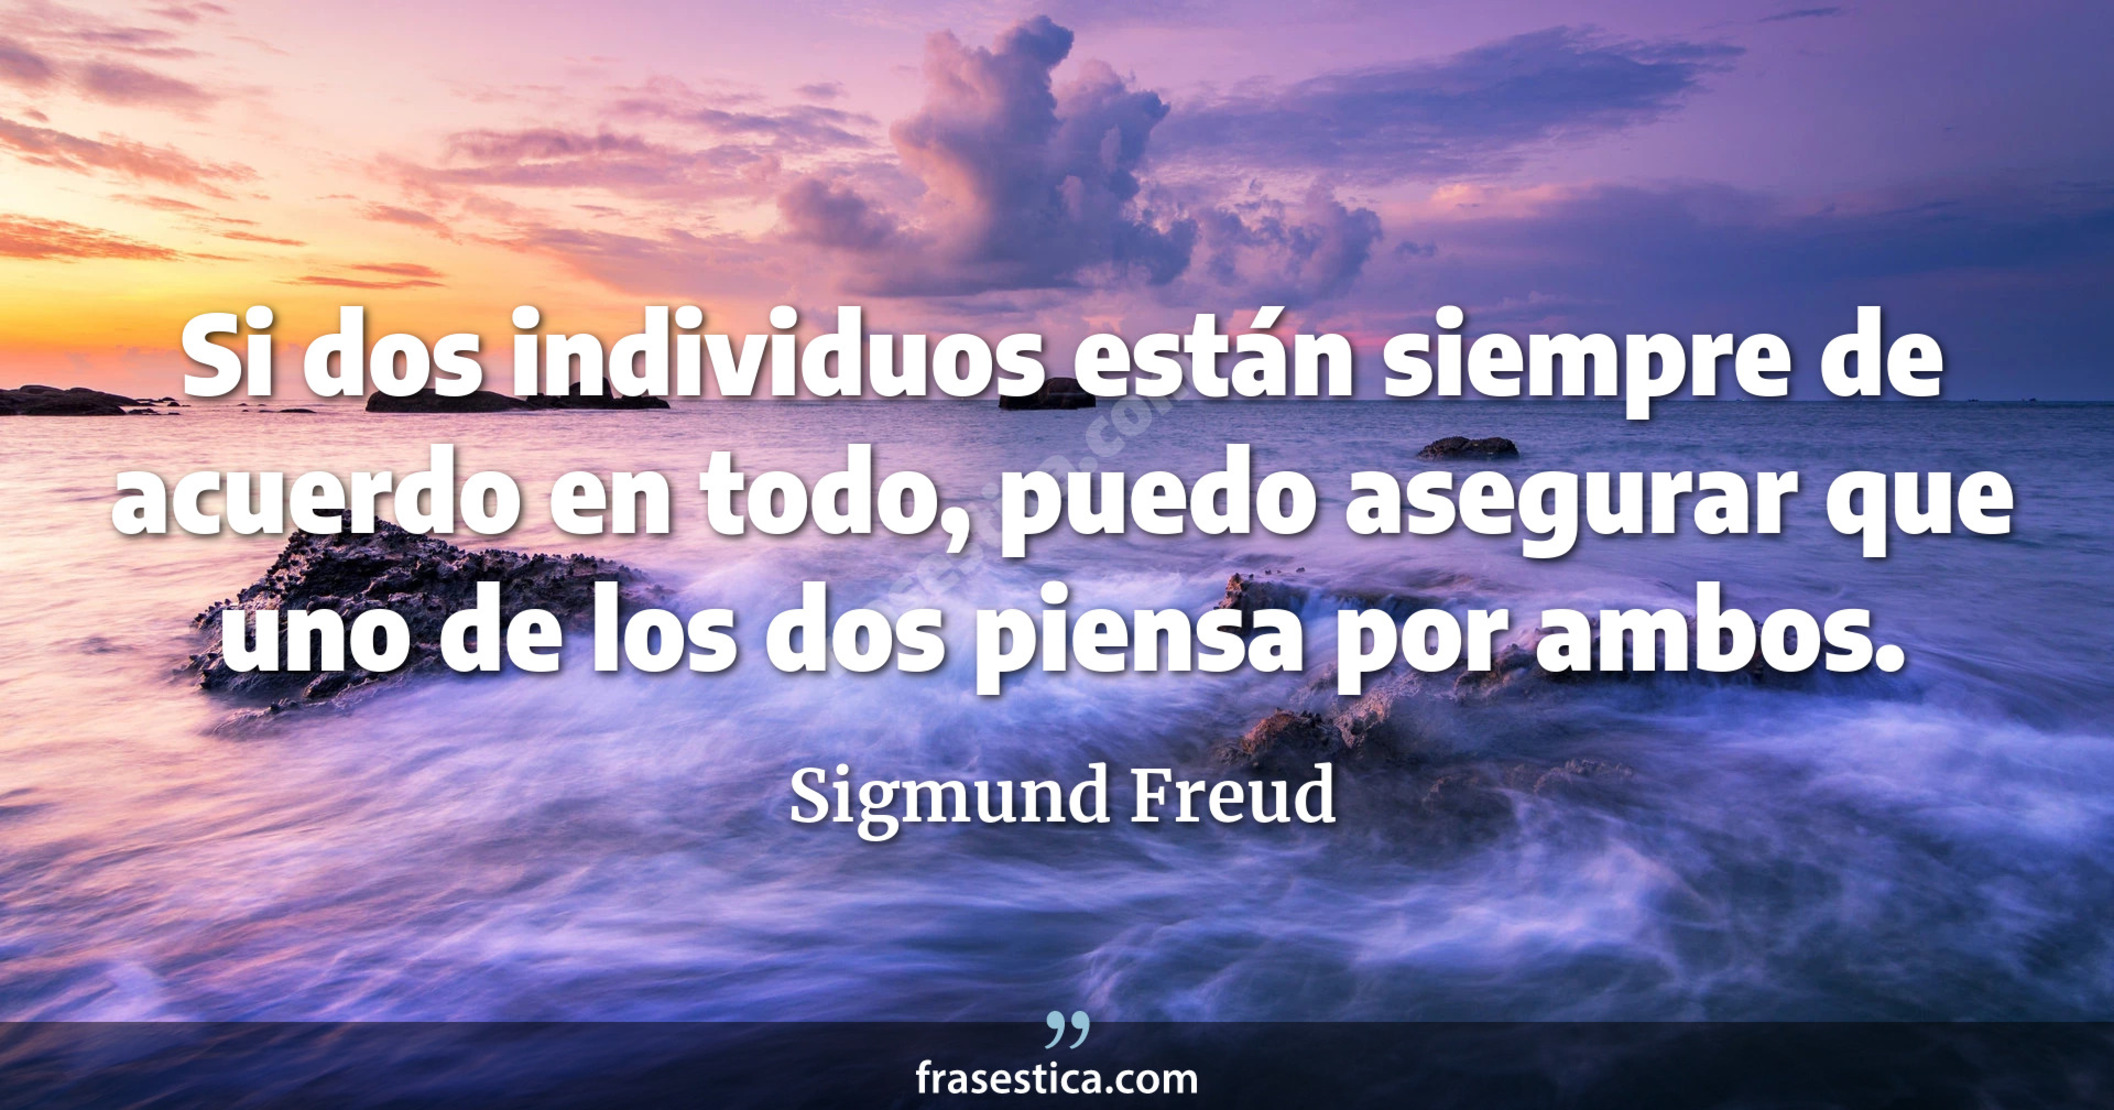 Si dos individuos están siempre de acuerdo en todo, puedo asegurar que uno de los dos piensa por ambos. - Sigmund Freud